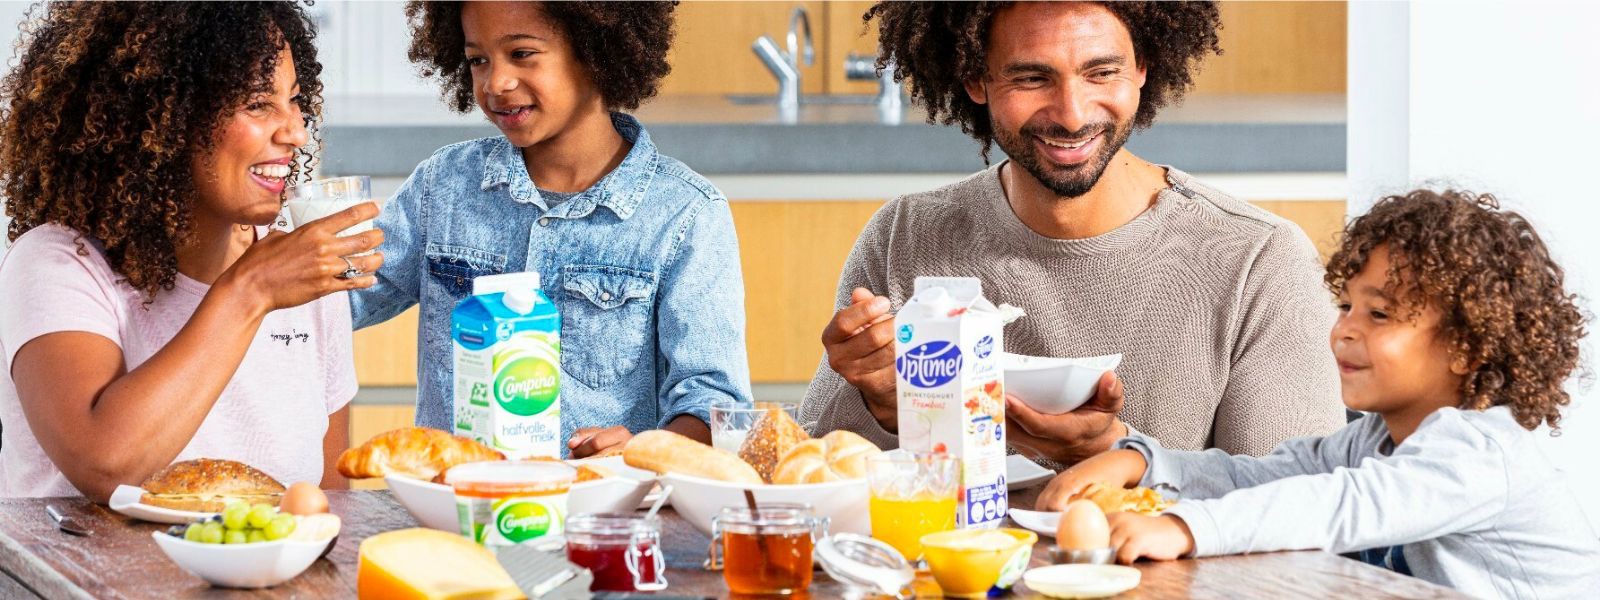 En familj på fyra personer som äter frukost tillsammans.